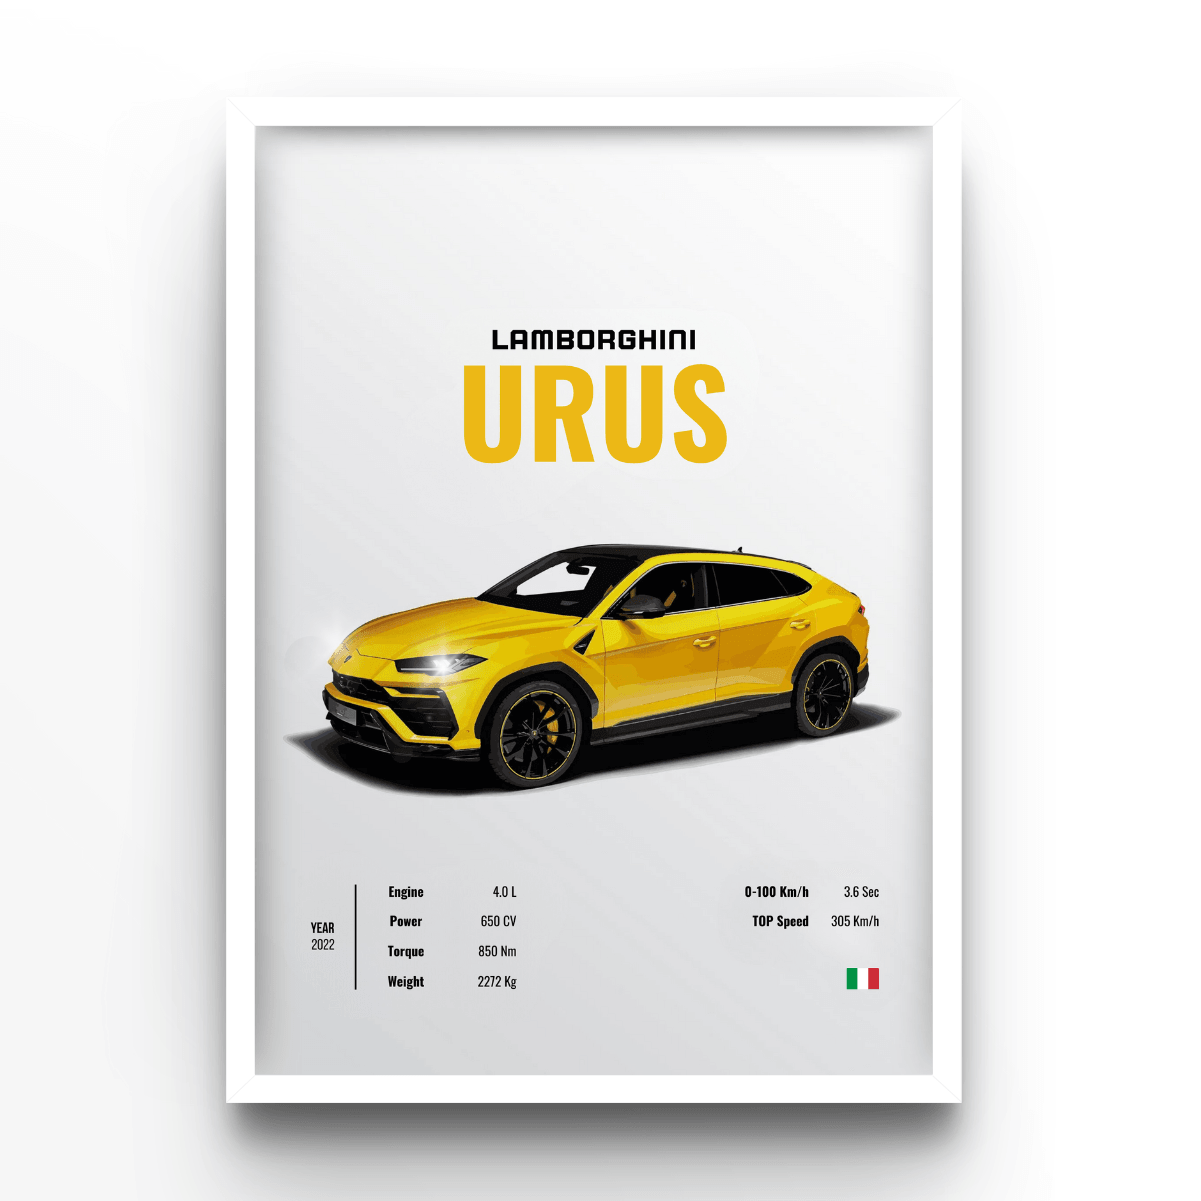 Lamborghini Urus - A4, A3, A2 Posters Base - Poster Print Shop / Art Prints / PostersBase